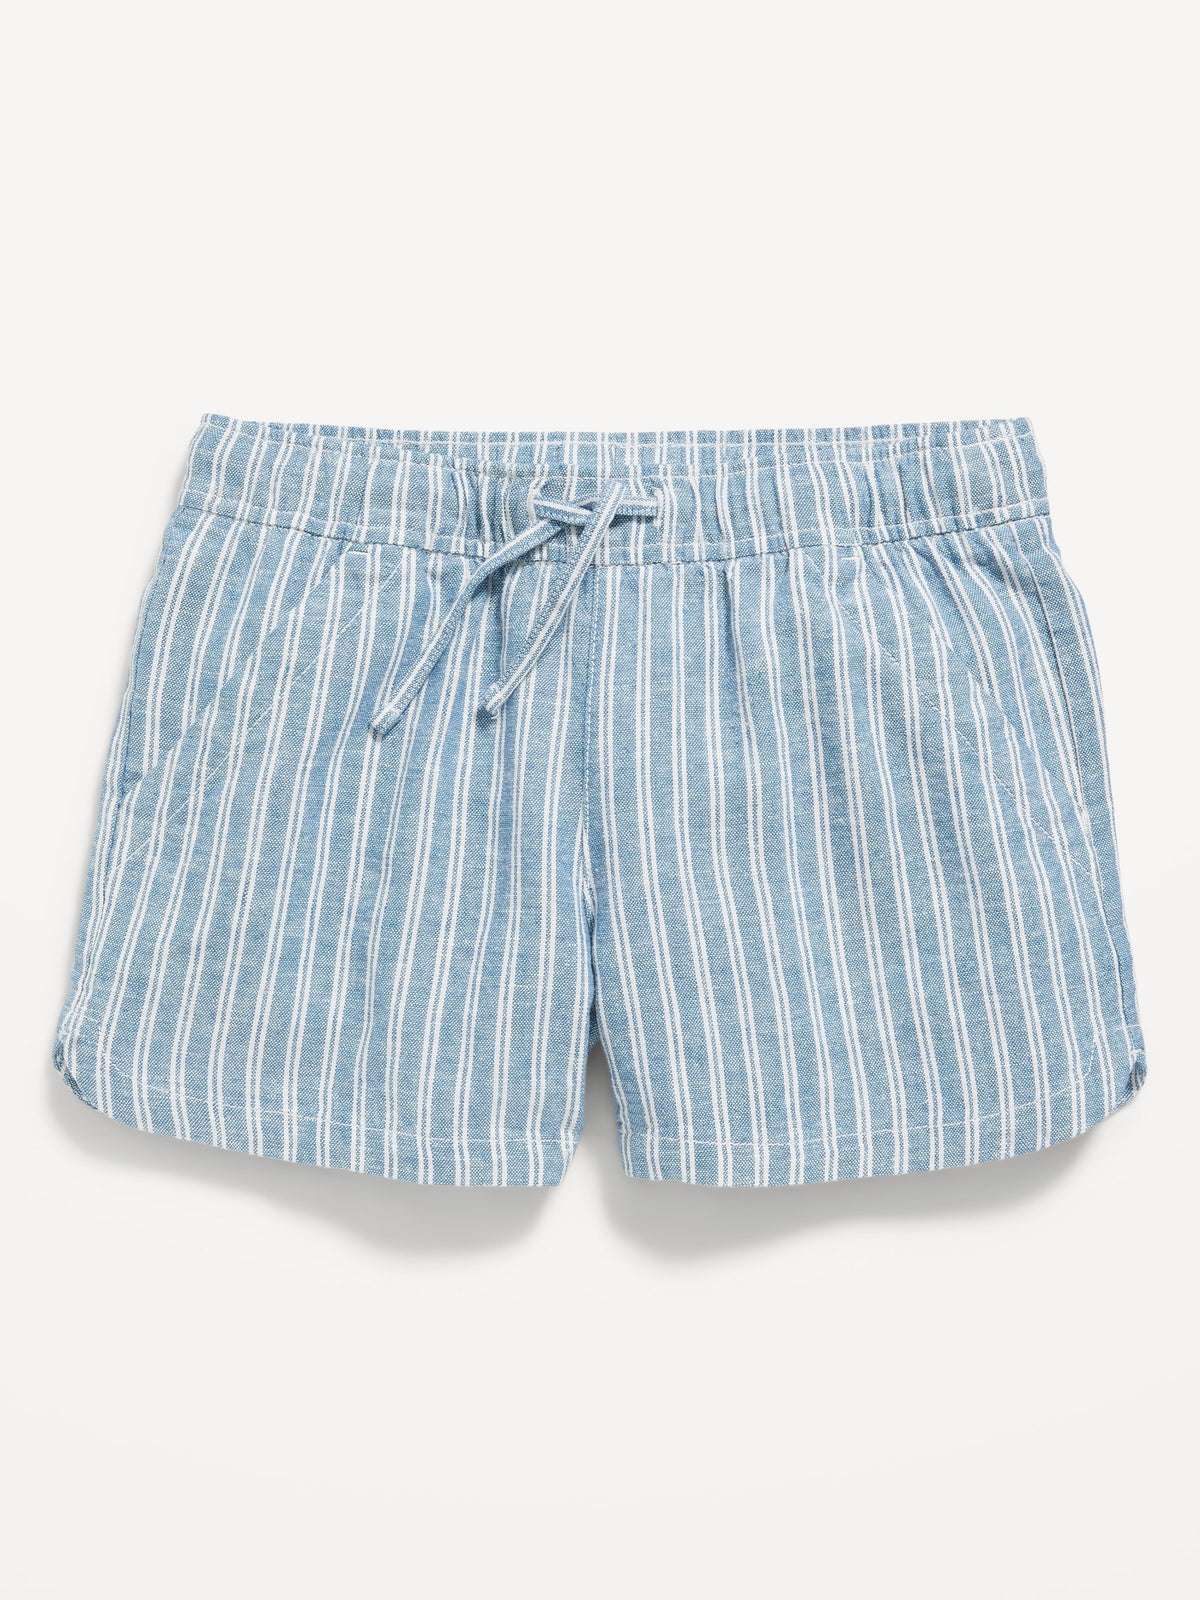 Striped Linen-Blend Drawstring Shorts for Girls